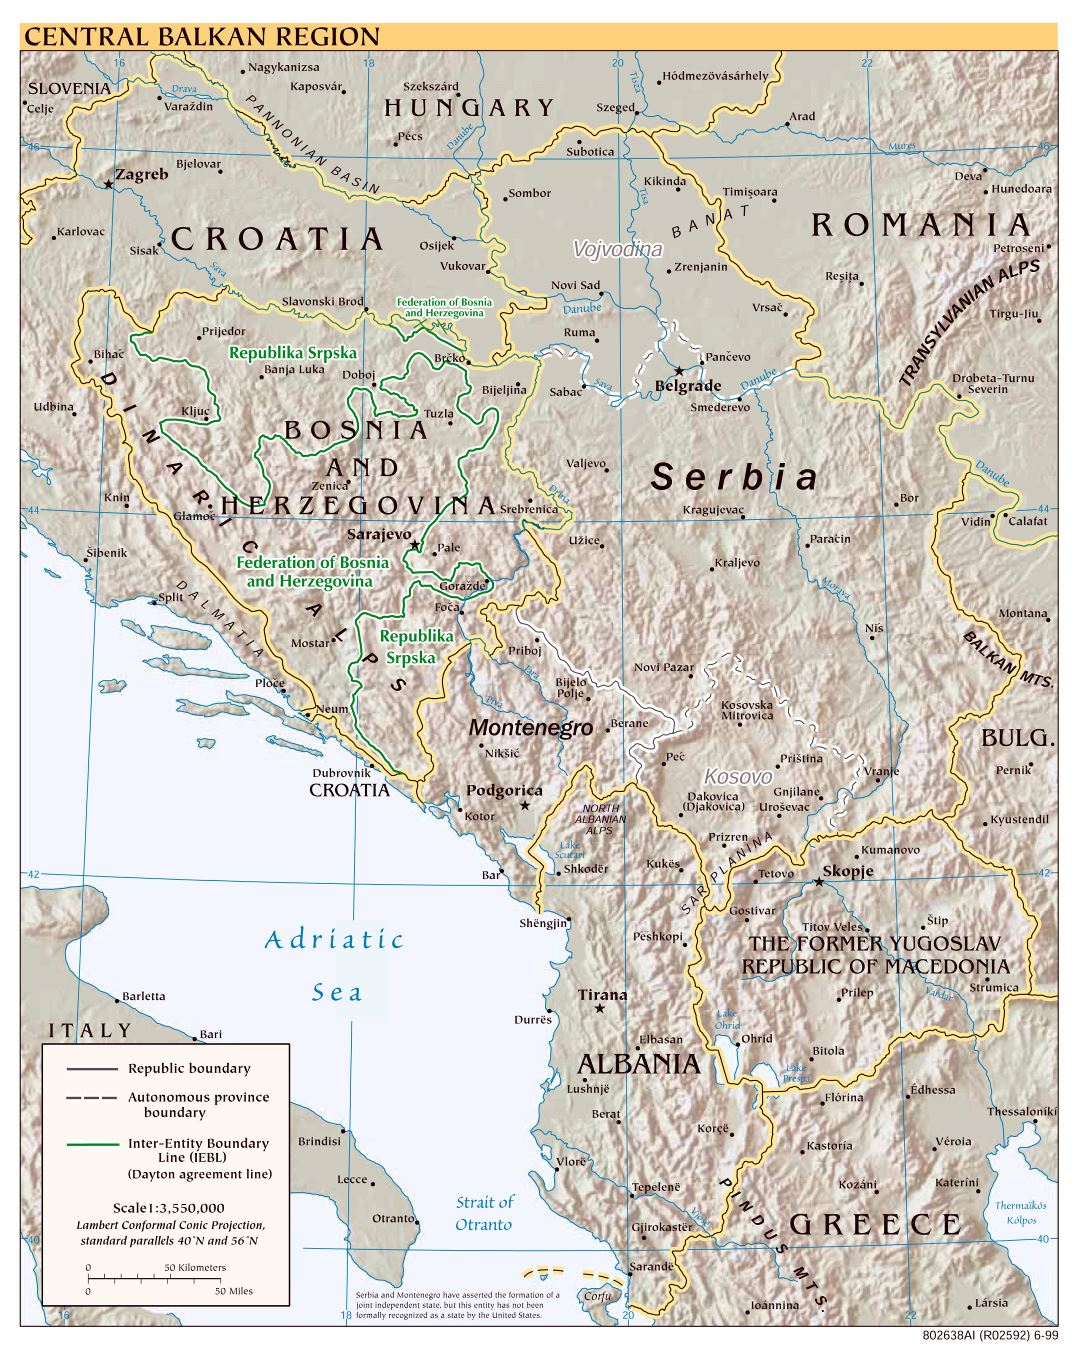 Mapa político a gran escala de la Región Central de los Balcanes con alivio, las carreteras y las principales ciudades - 1999